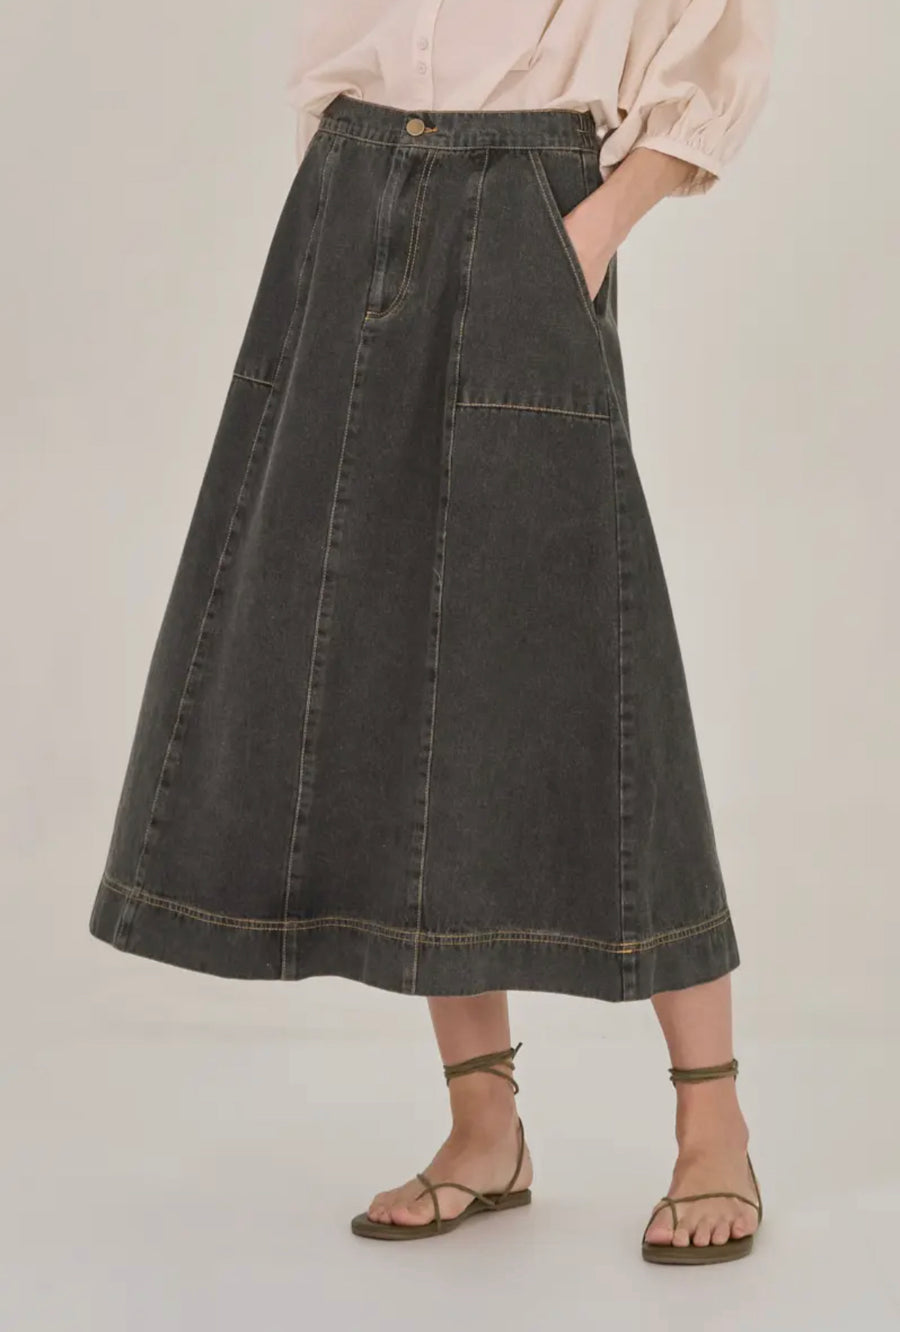 Flared Denim Skirt- Faded Black